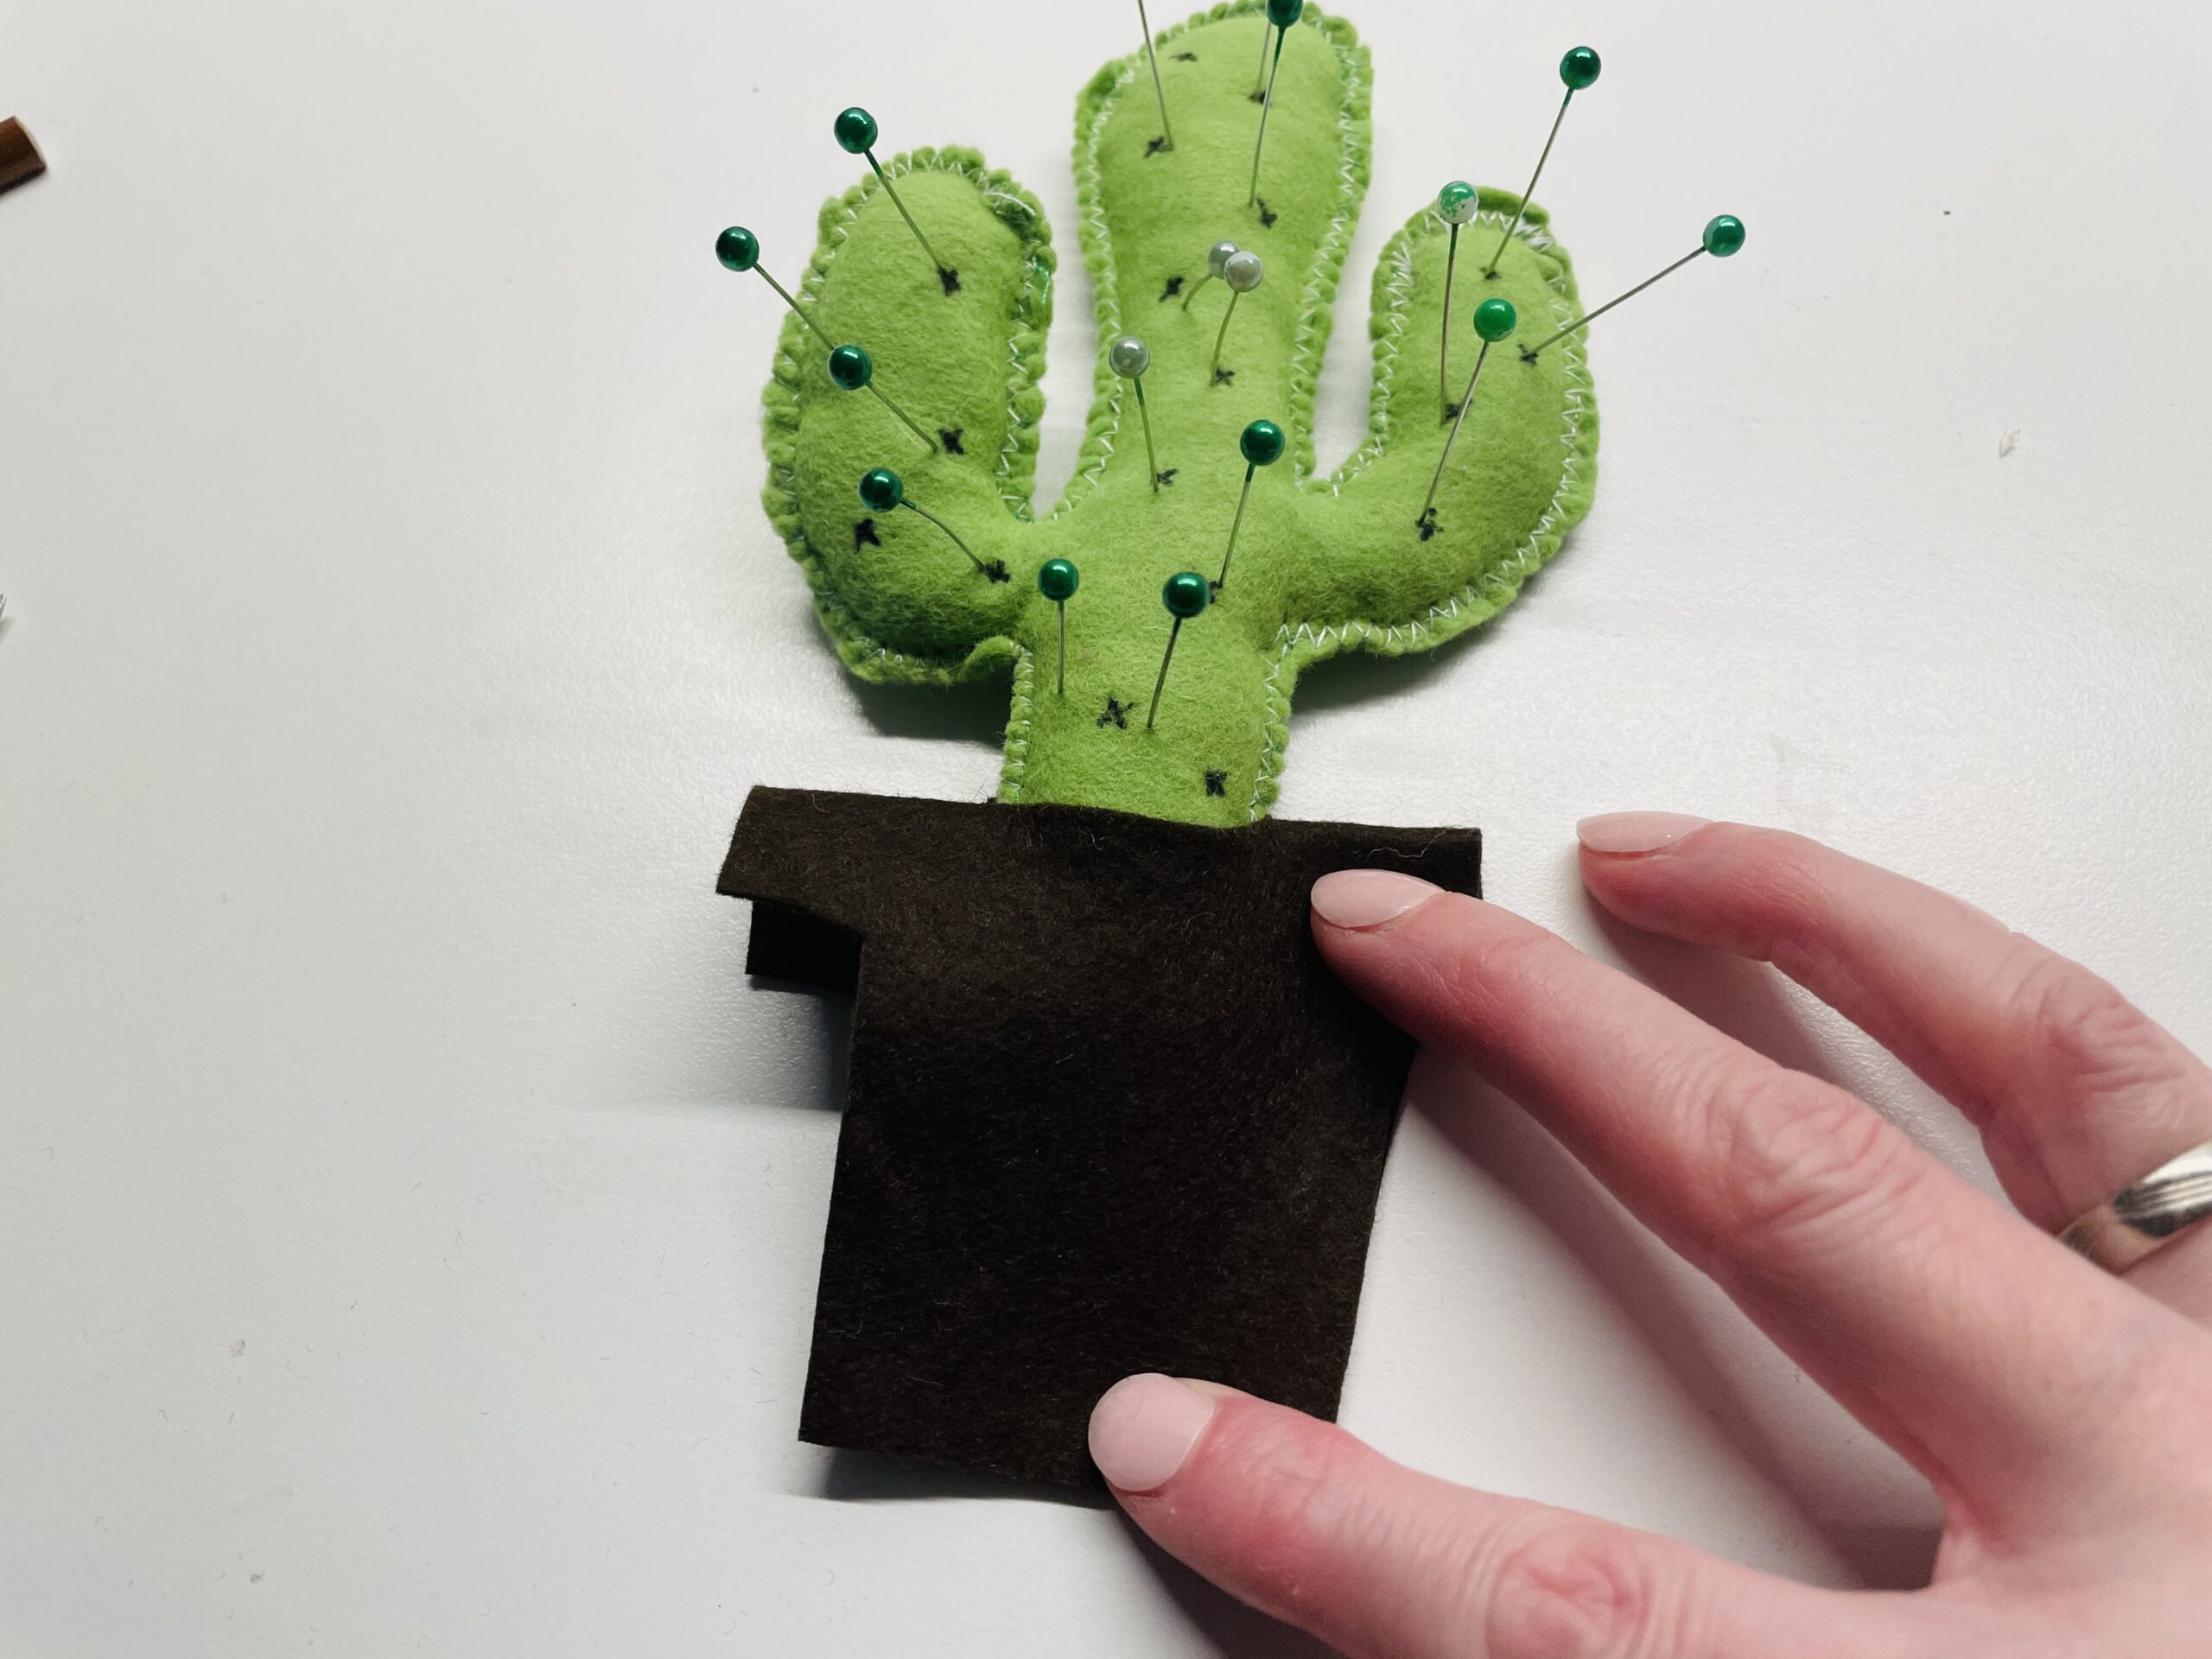 Bild zum Schritt 10 für das Bastel- und DIY-Abenteuer für Kinder: 'Um den Kaktus noch zu verschönern, könnt ihr ihn z.B....'